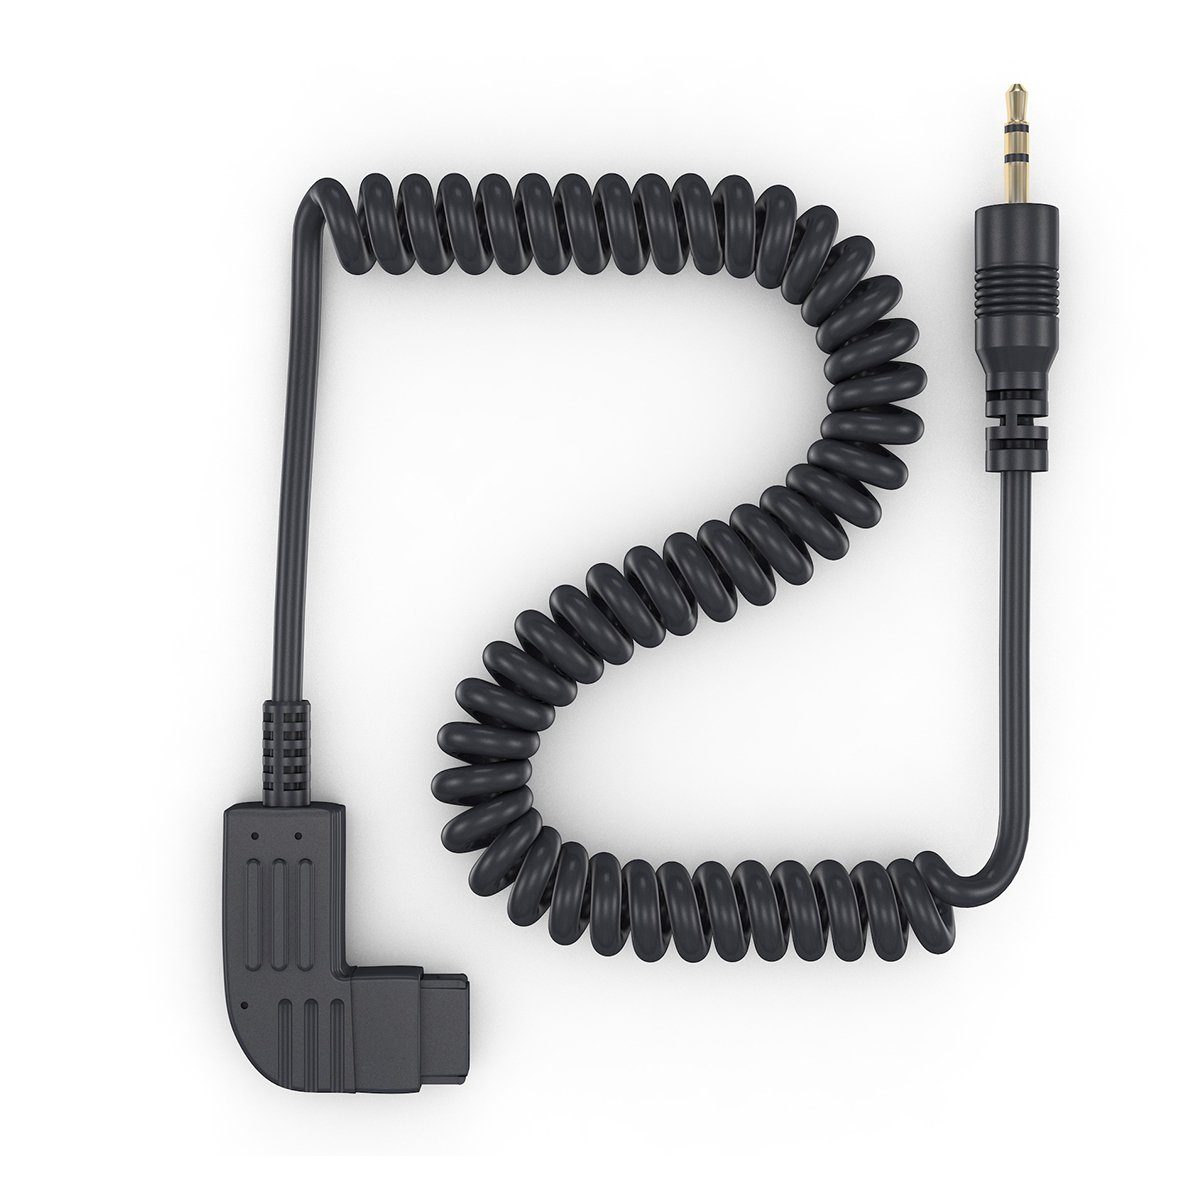 Spiral Sony ayex Fernauslöser Minolta Adapterkabel z.B. für Kabel-Fernauslöser Konica S1